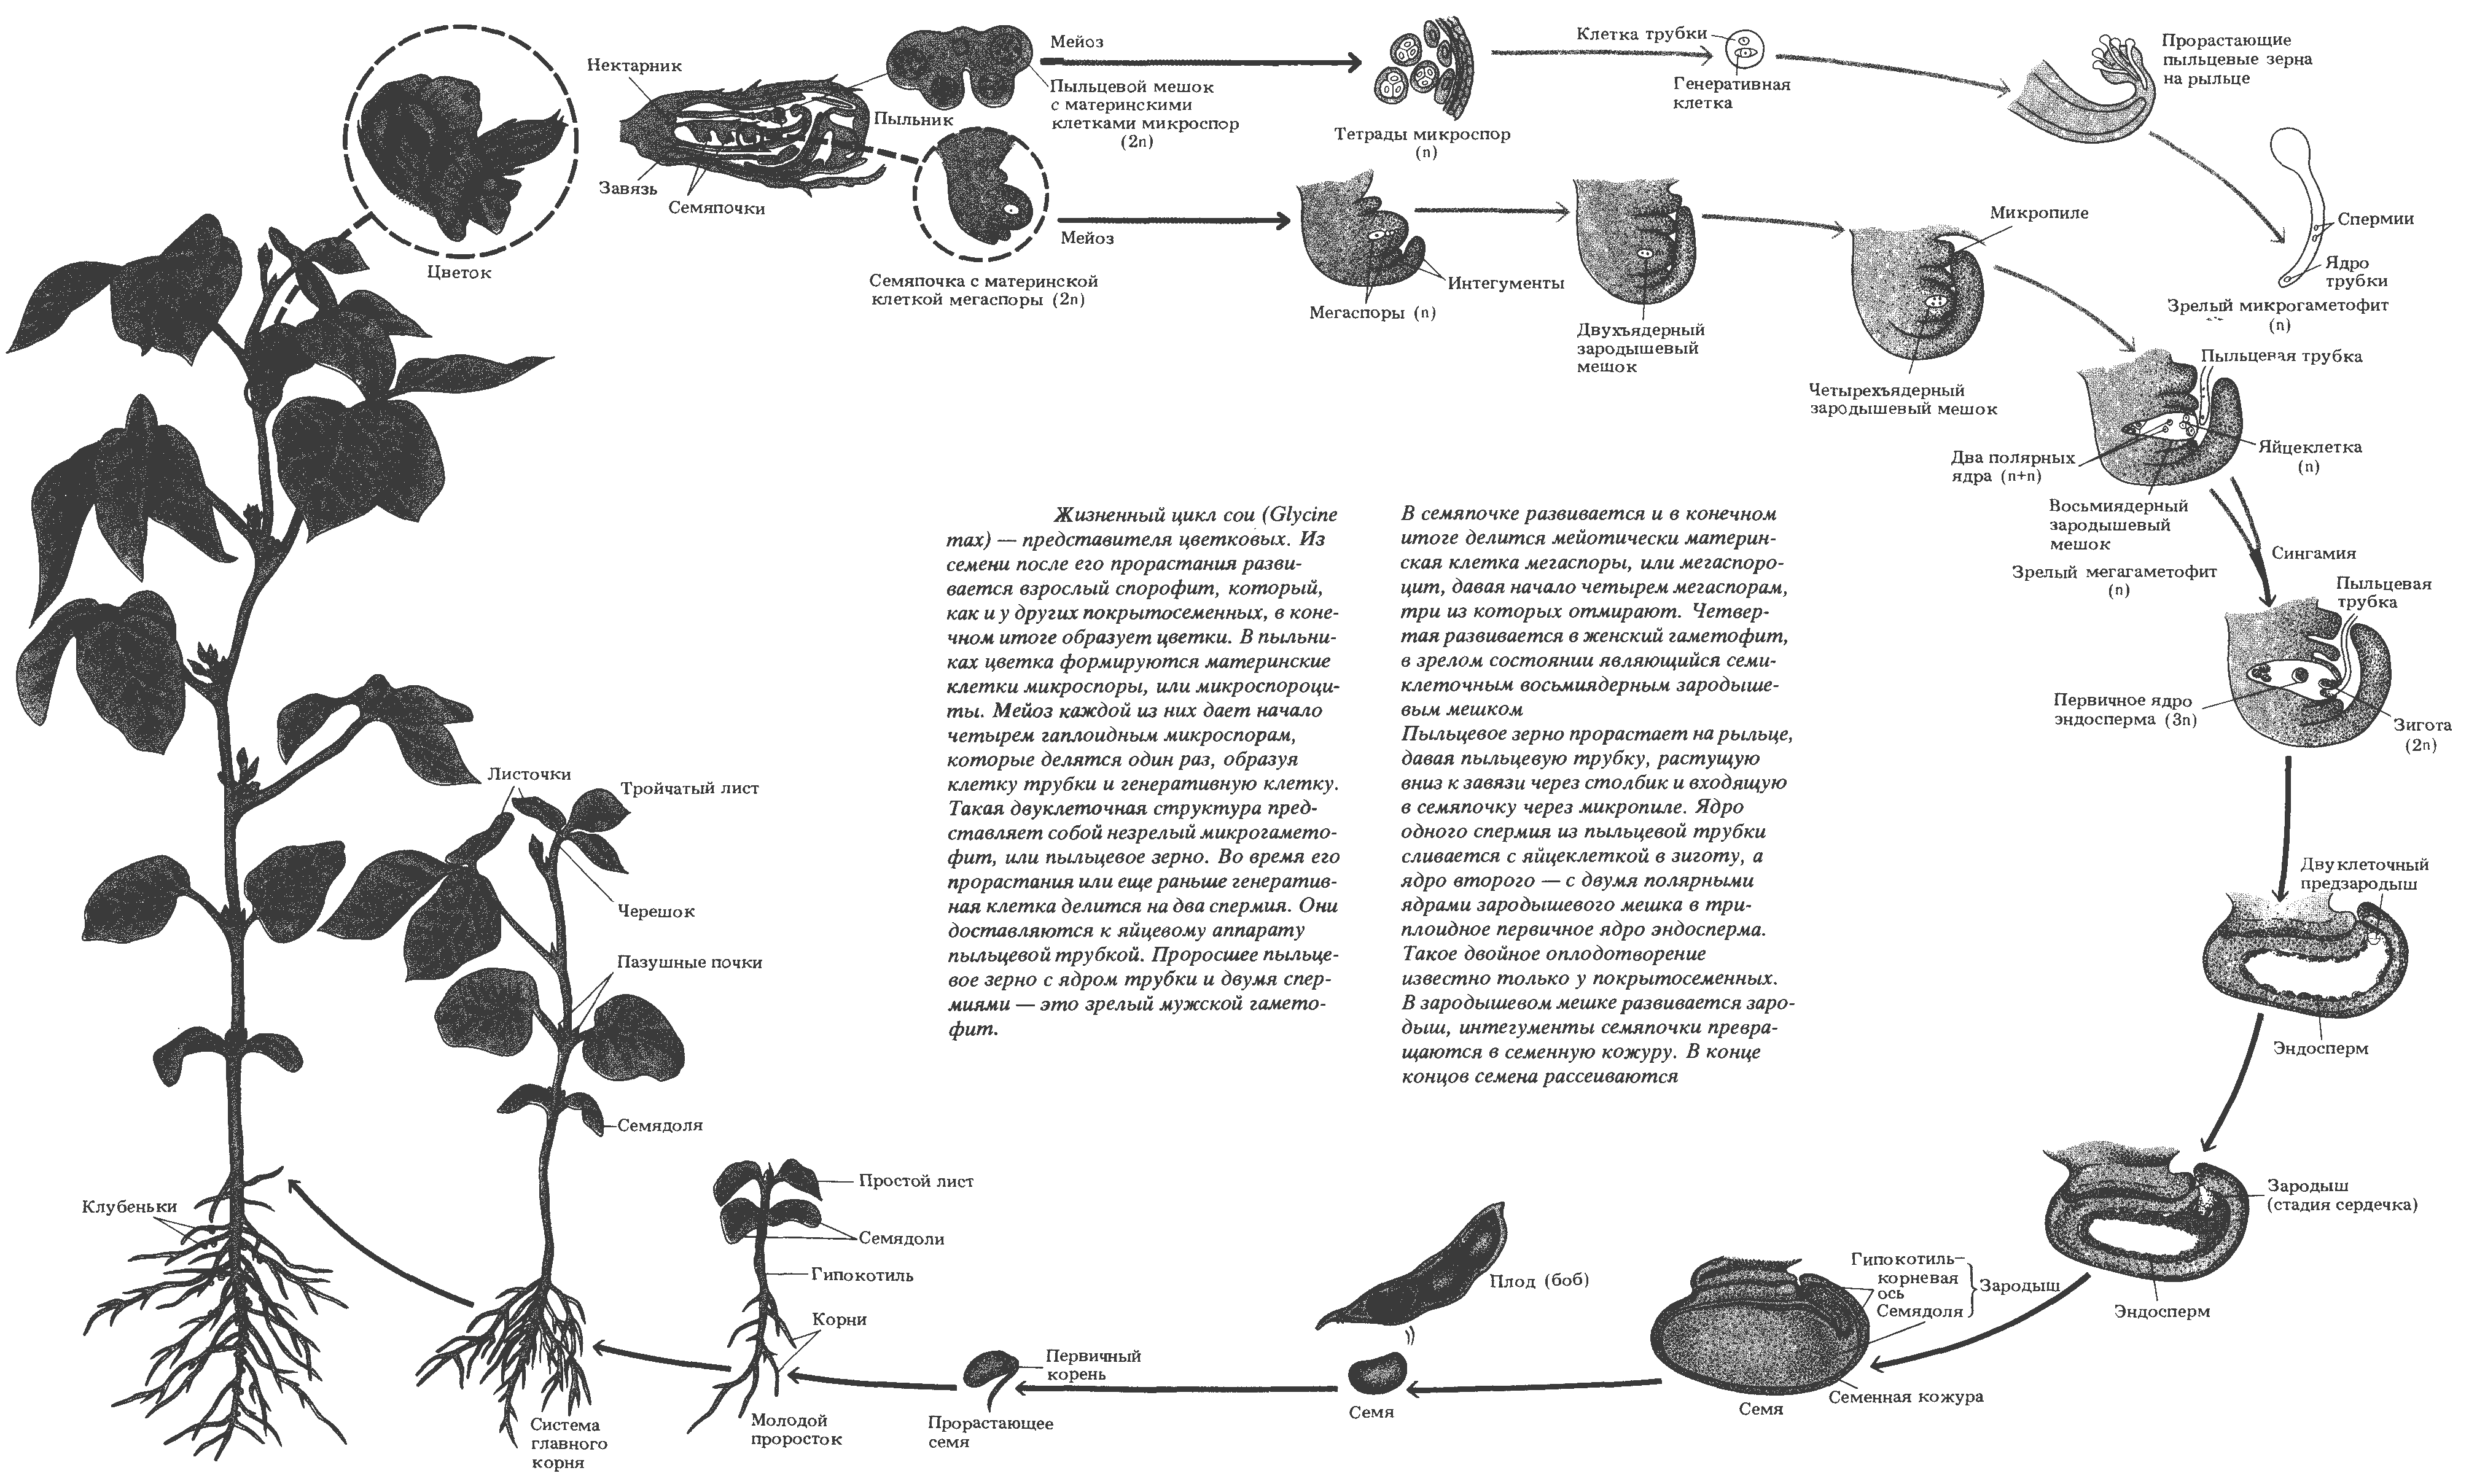 Прорастание вегетативной клетки в пыльцевую трубку. Жизненный цикл покрытосеменных растений схема. Жизненный цикл цветковых растений схема. Цикл развития покрытосеменных. Цикл развития покрытосеменных растений схема.